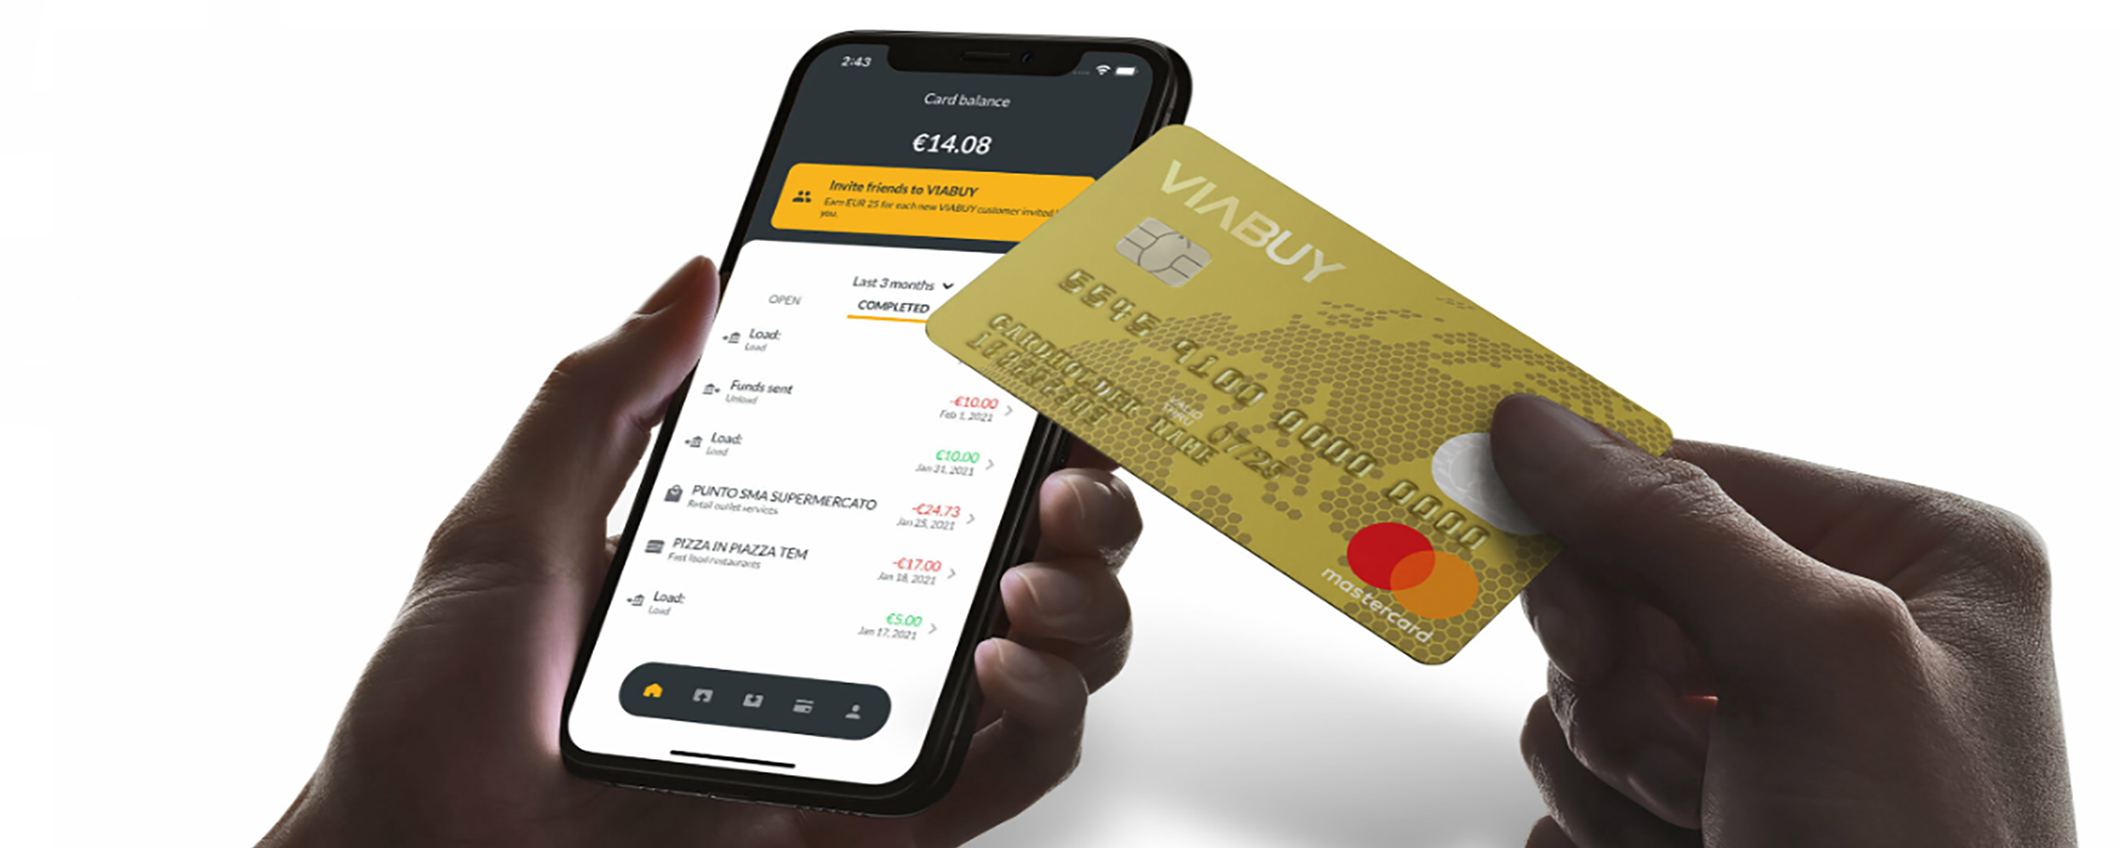 VIABUY: la carta MasterCard senza conto corrente